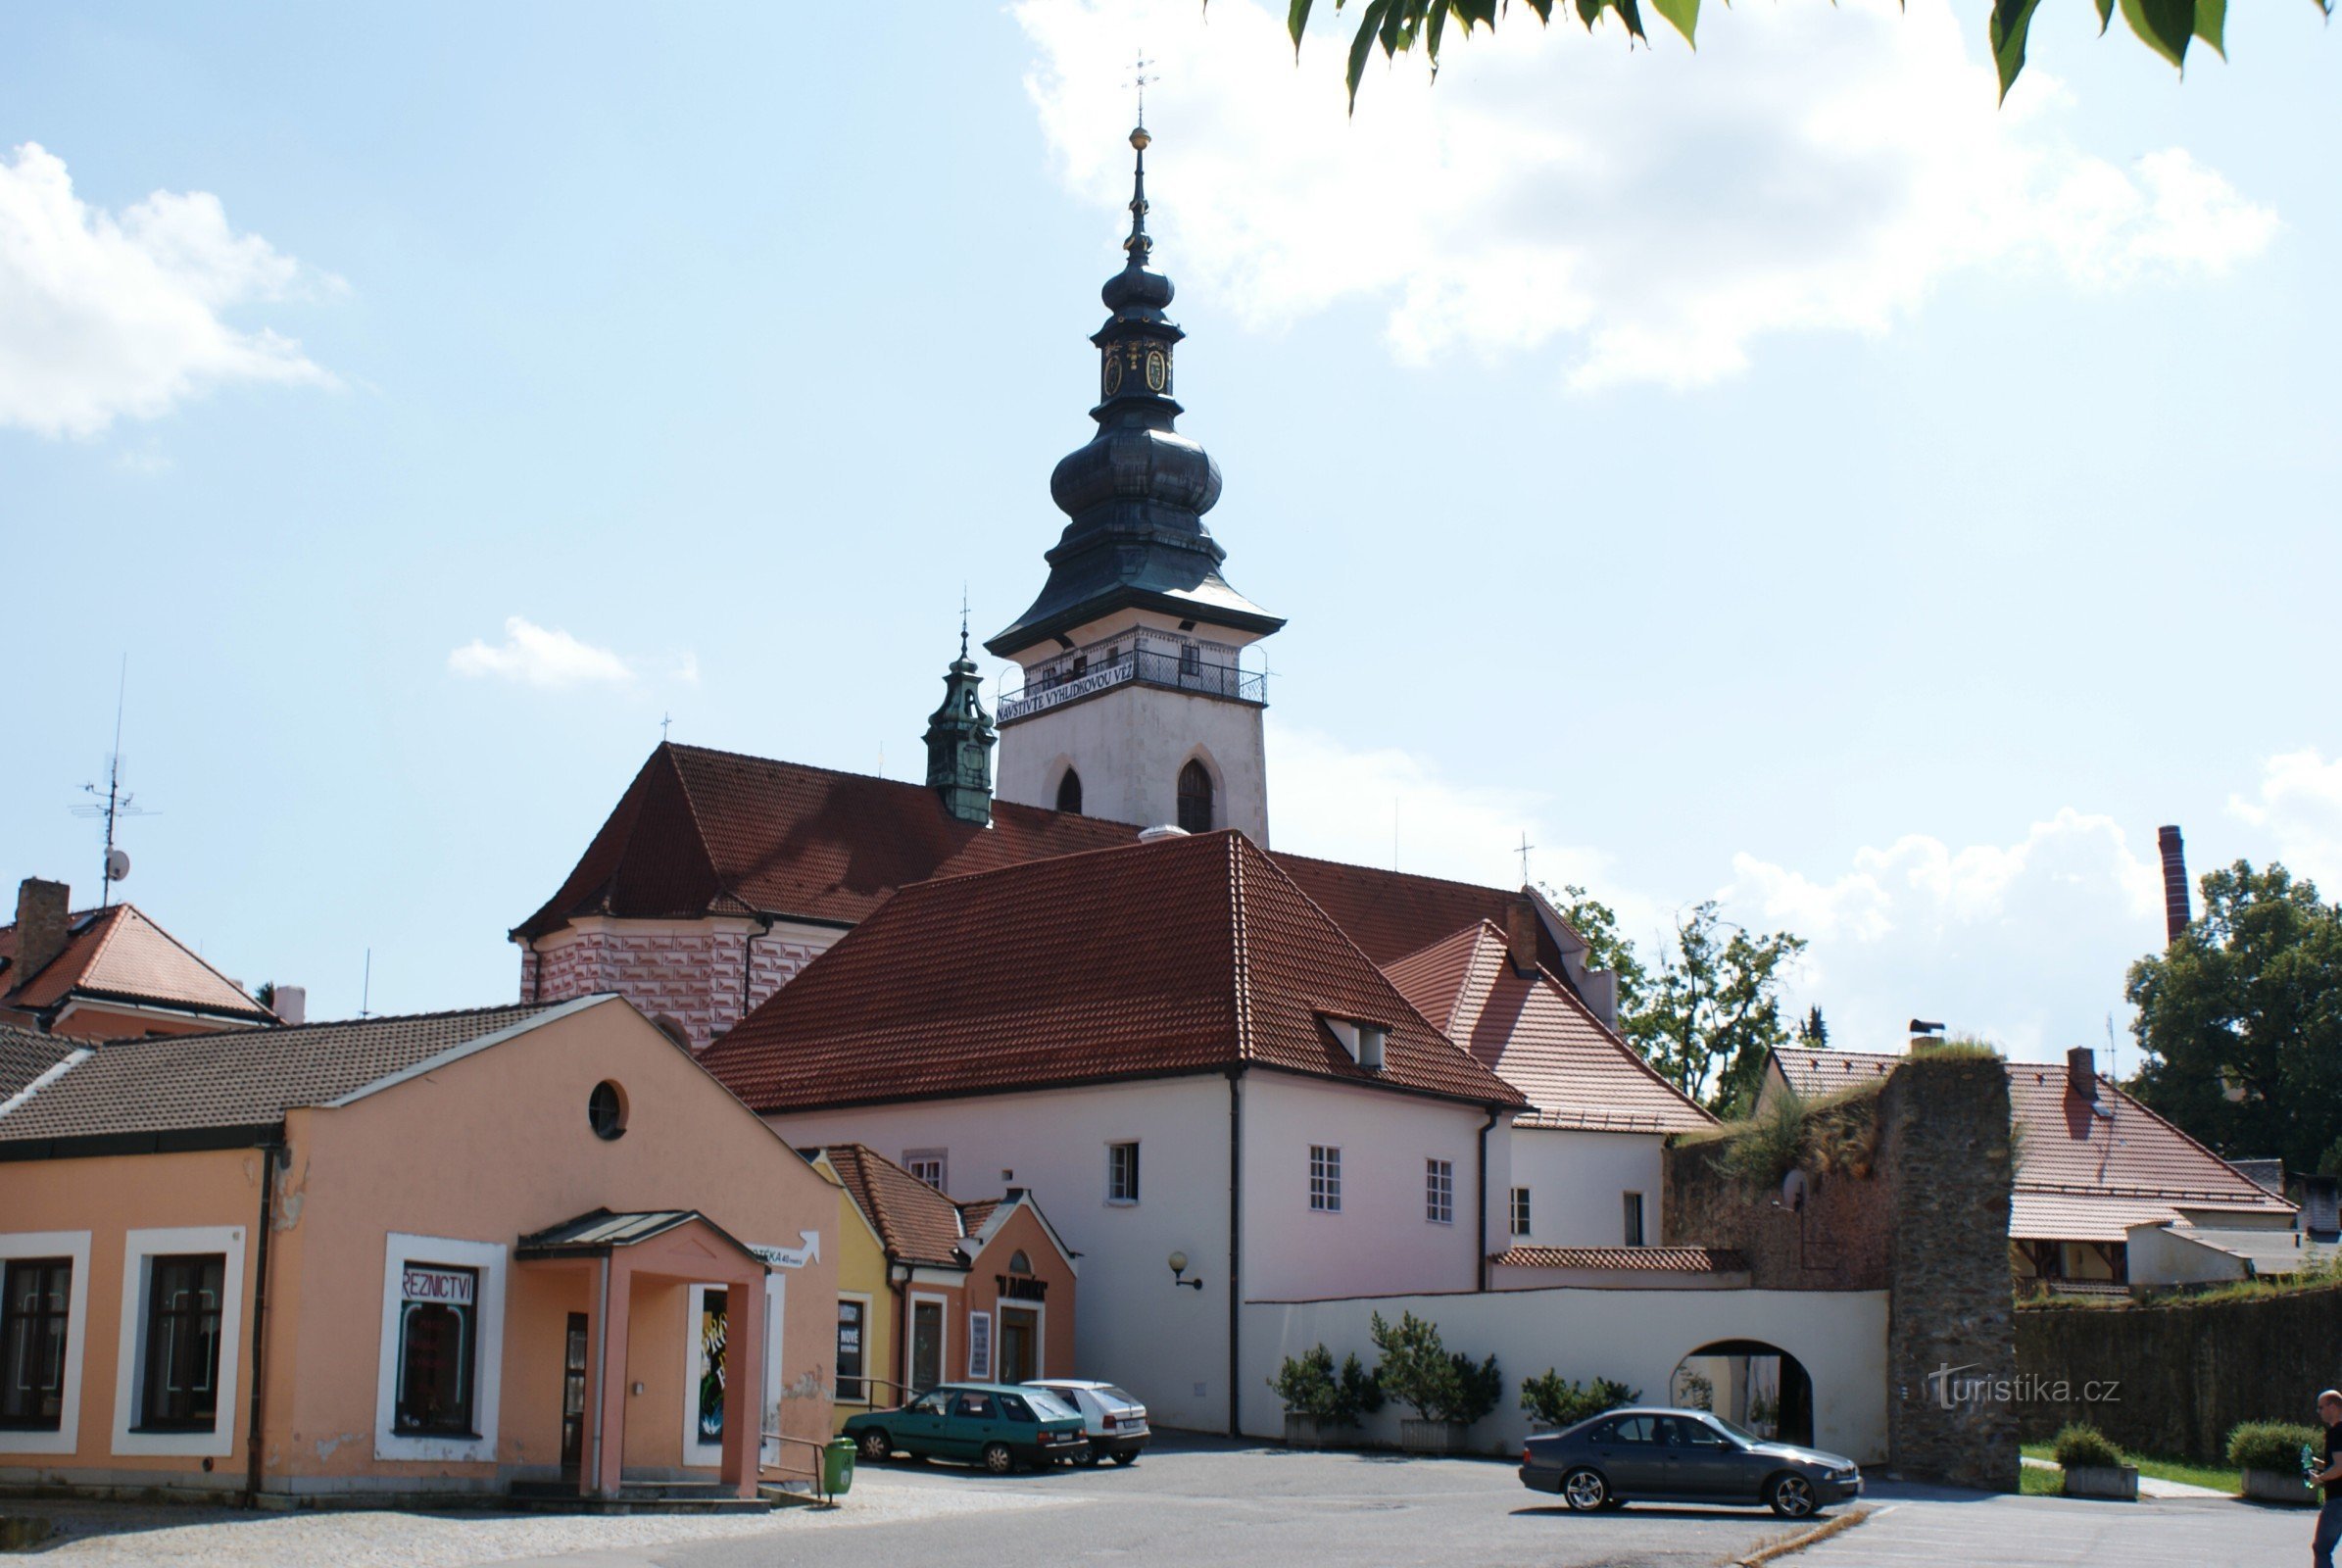 Pelhřimov – Basílica de St. Bartolomé con una torre de observación